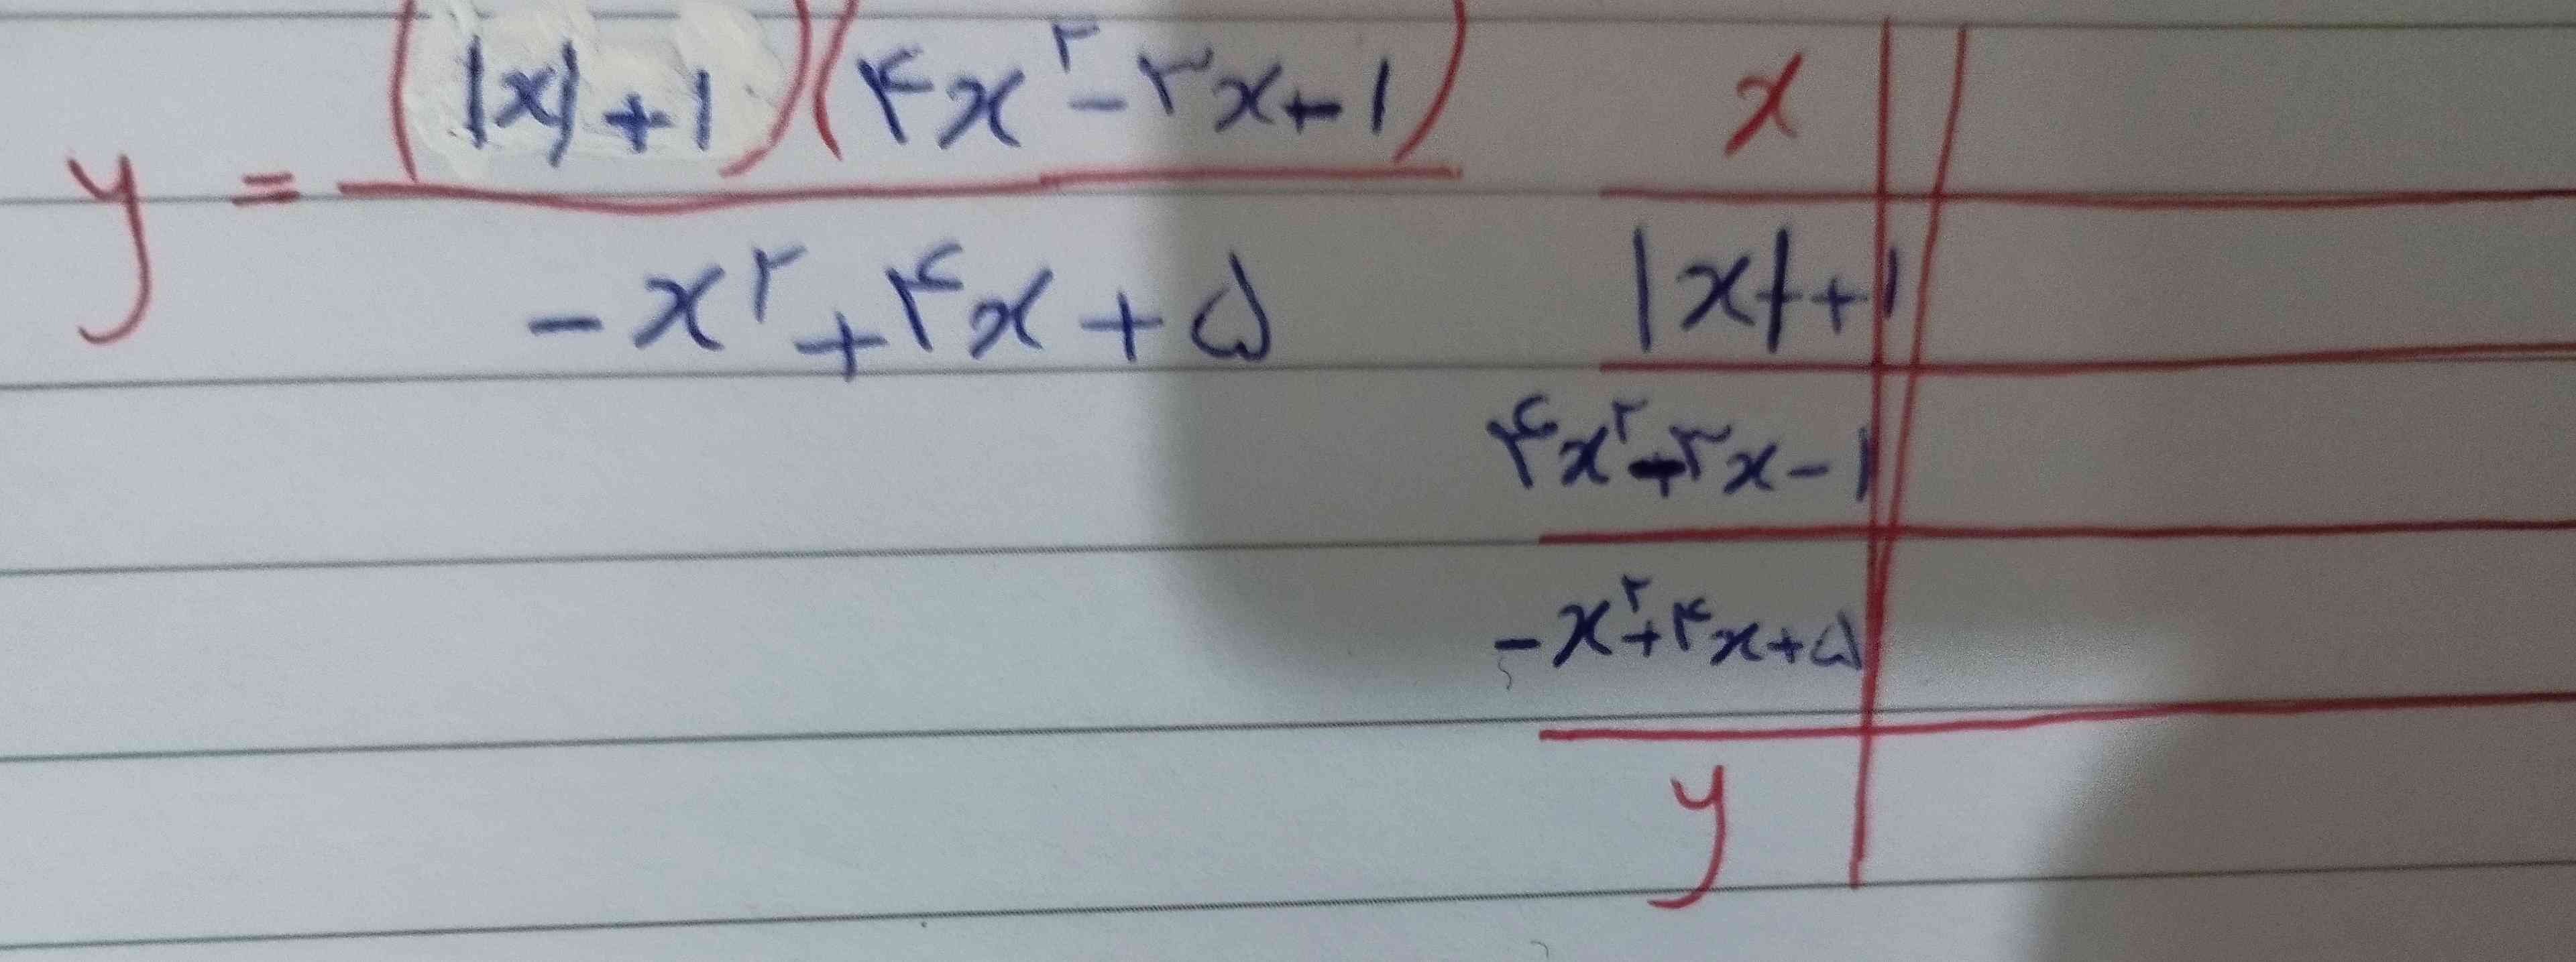 تعیین علامت کنید و 
عبارت دوم رو با روش های حل معادله درجه دوم حل کنید(۴x²-۳x-۱)